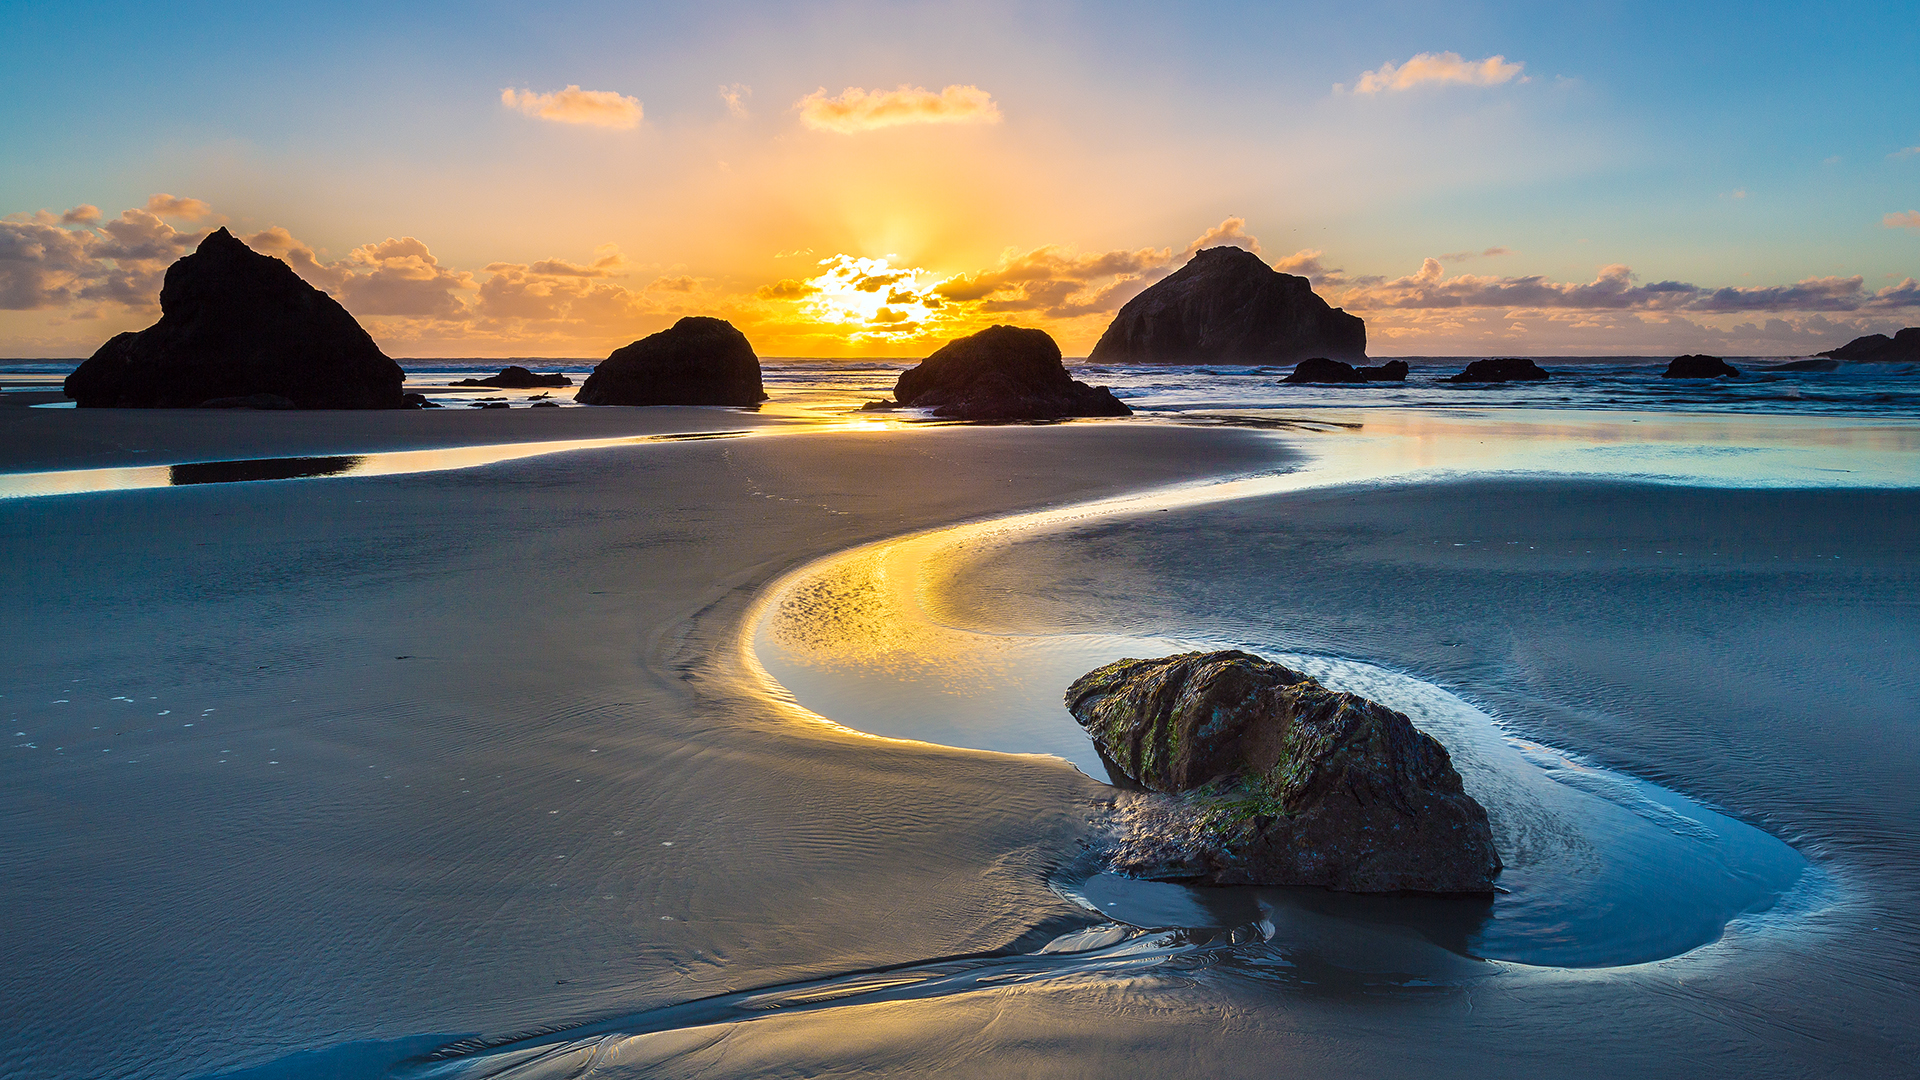 Đá Bandon Face Rock là một danh lam thắng cảnh nổi tiếng tại bang Oregon của Mỹ với hình dạng đáng sợ giống như một khuôn mặt người. Chung quanh là những đá granit đen thẫm, tạo thành bãi biển đẹp như trong truyện cổ tích. Hãy để mình được mê mải ngắm nhìn cảnh sắc đầy kỳ bí, hãy nhấn vào hình ảnh ở đây để thưởng thức.